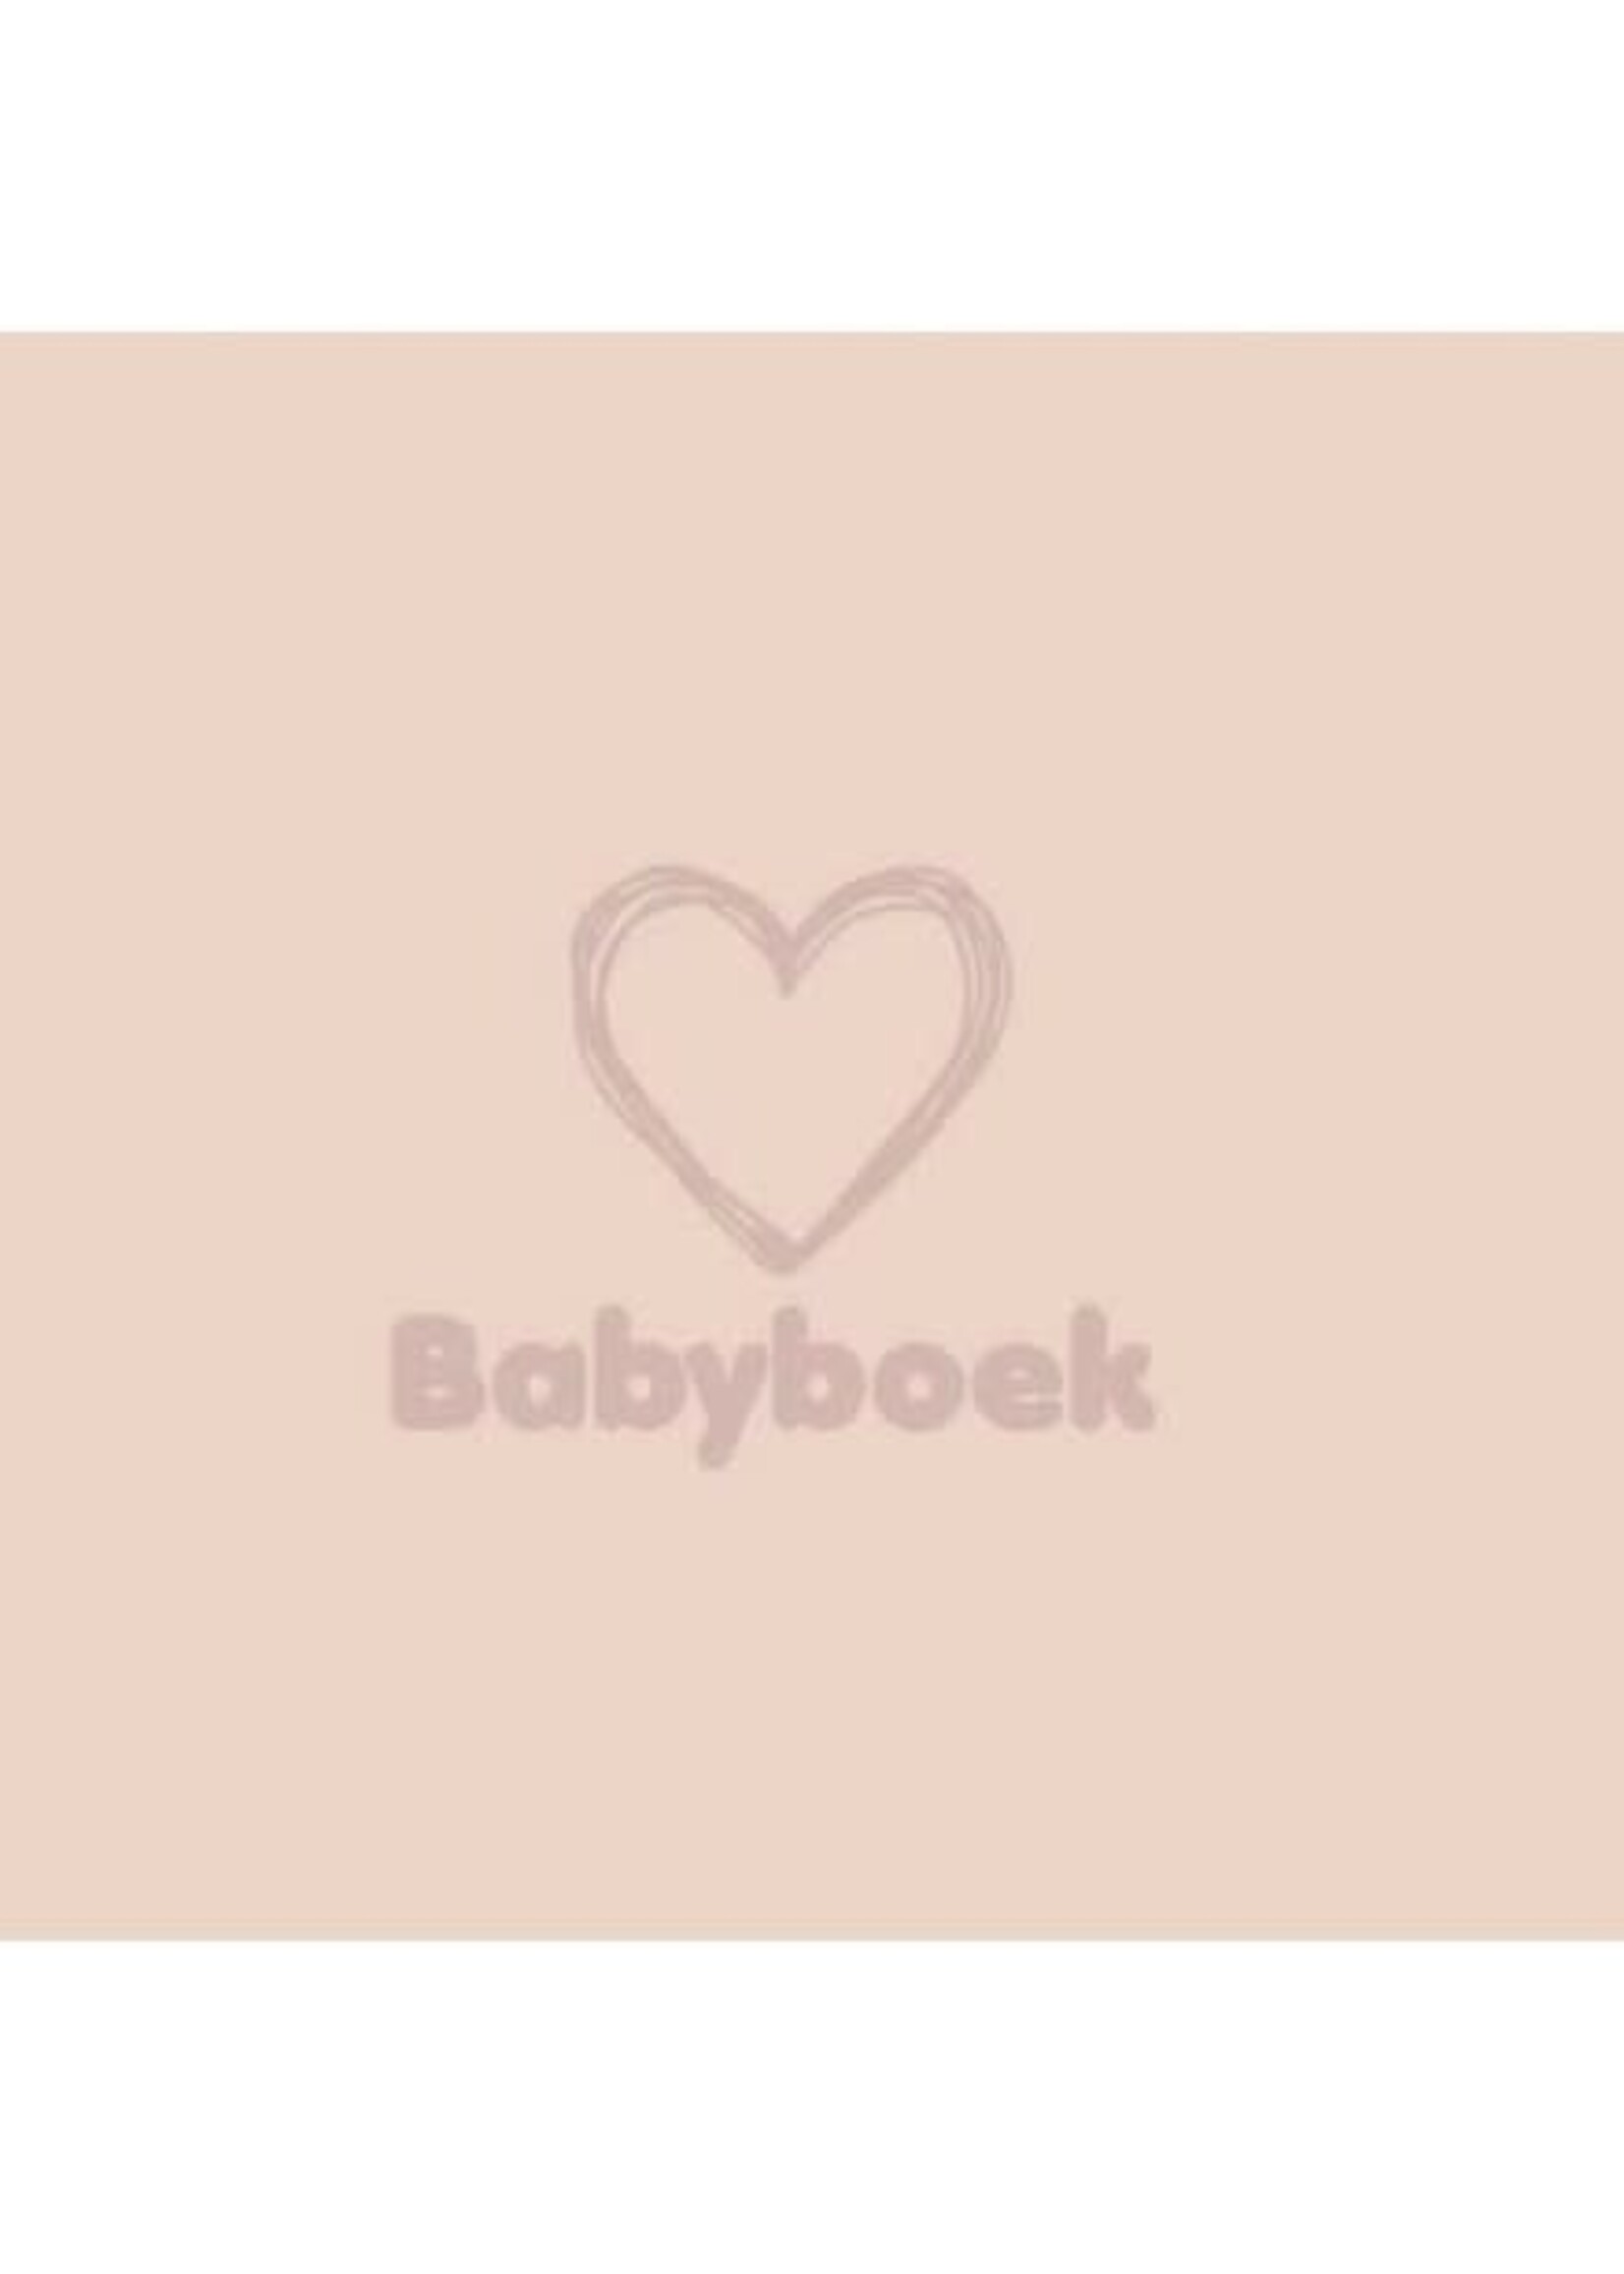 Jep! Babyboek smoke roze